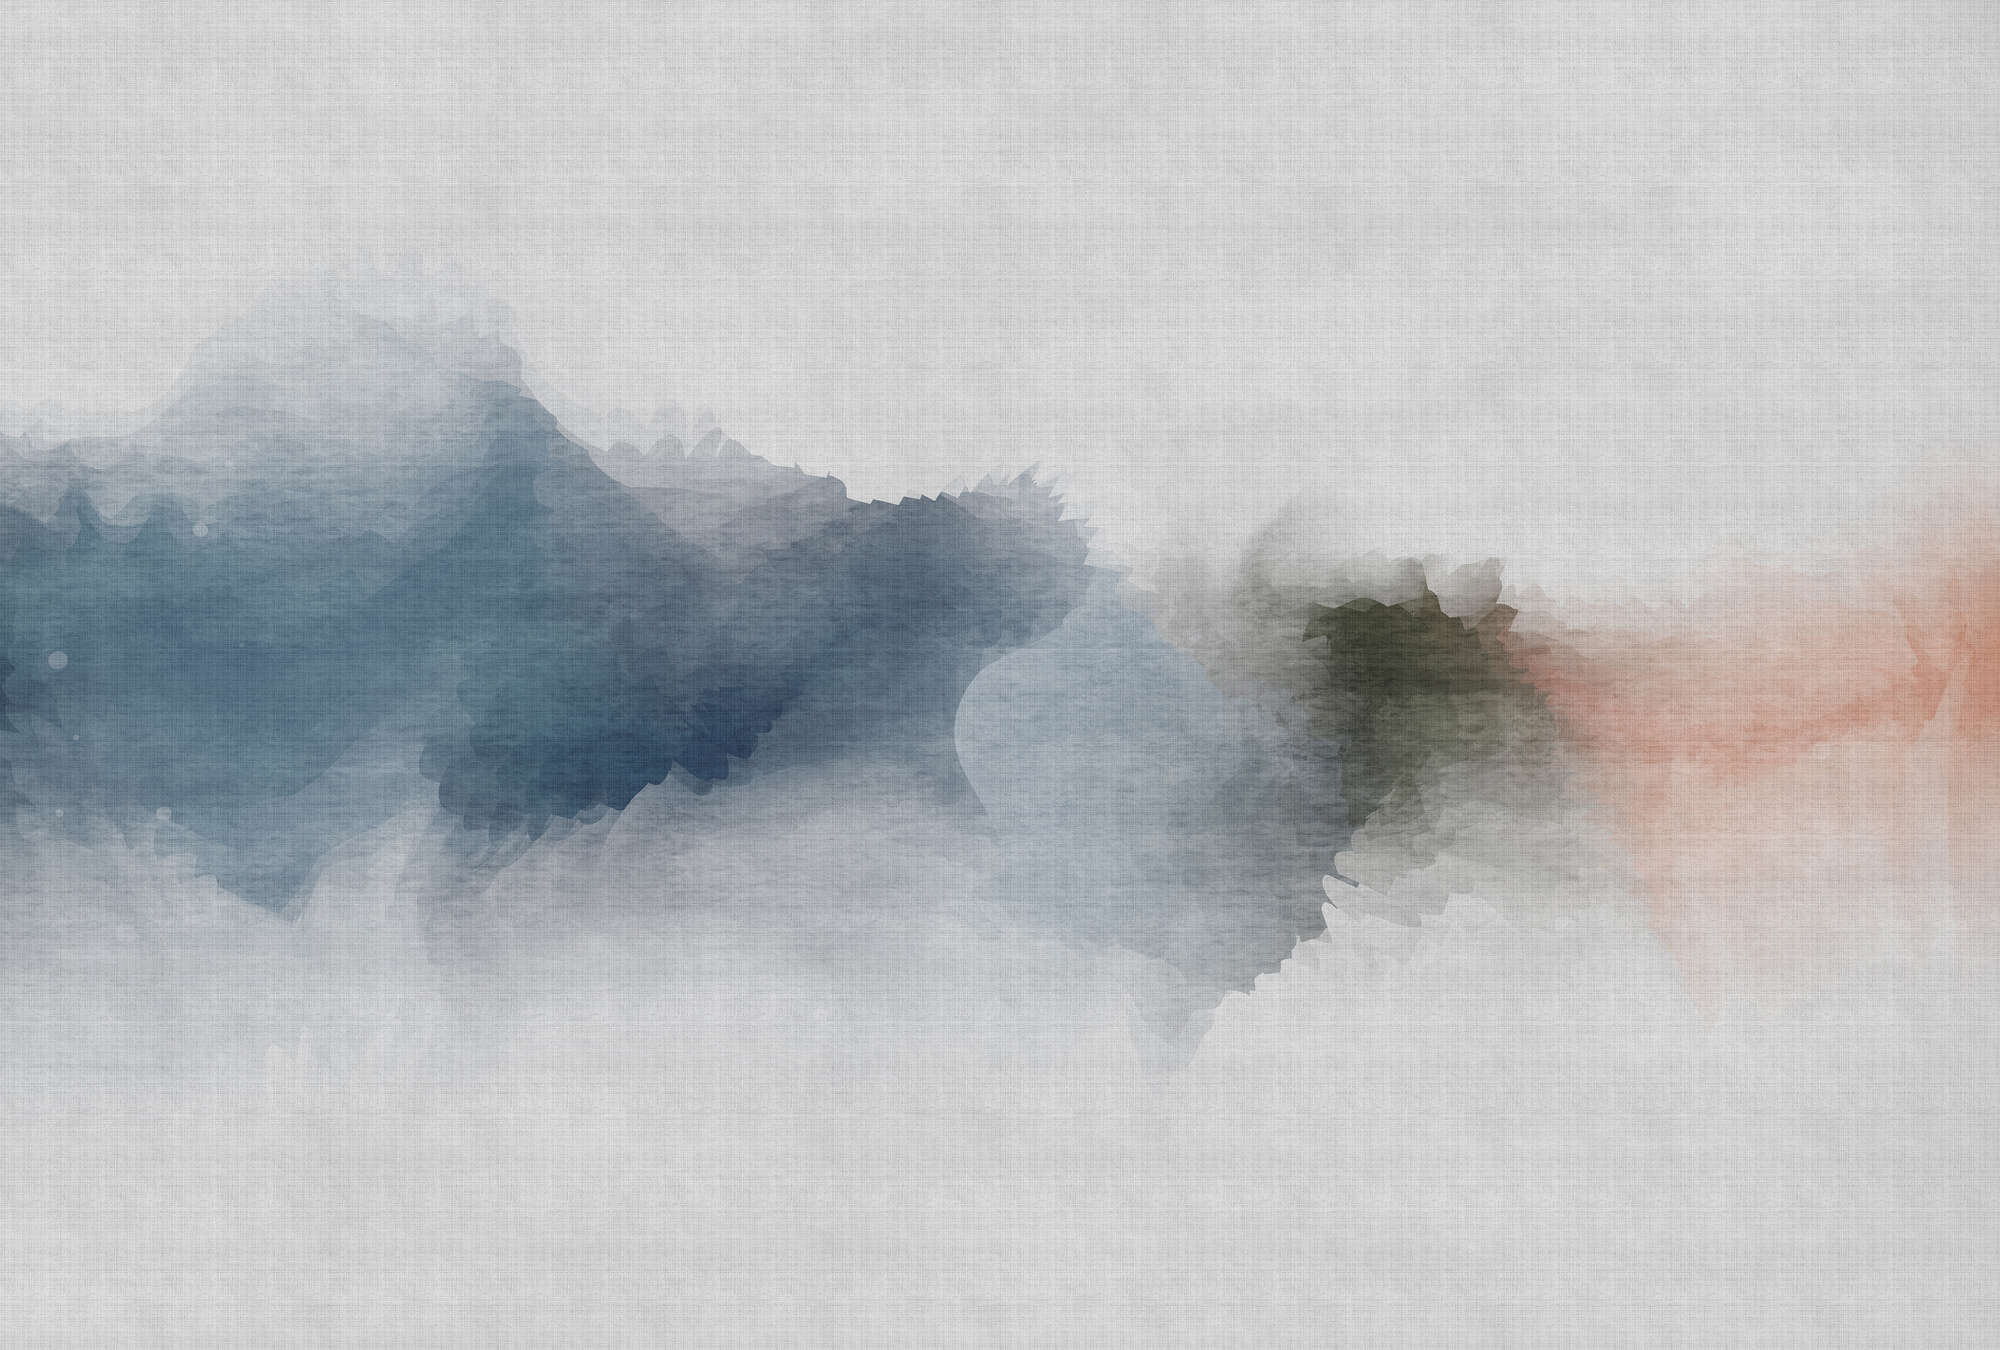             Daydream 1 - Carta da parati minimalista in stile acquerello - Texture lino naturale - Grigio, arancio | Materiali non tessuto testurizzato
        